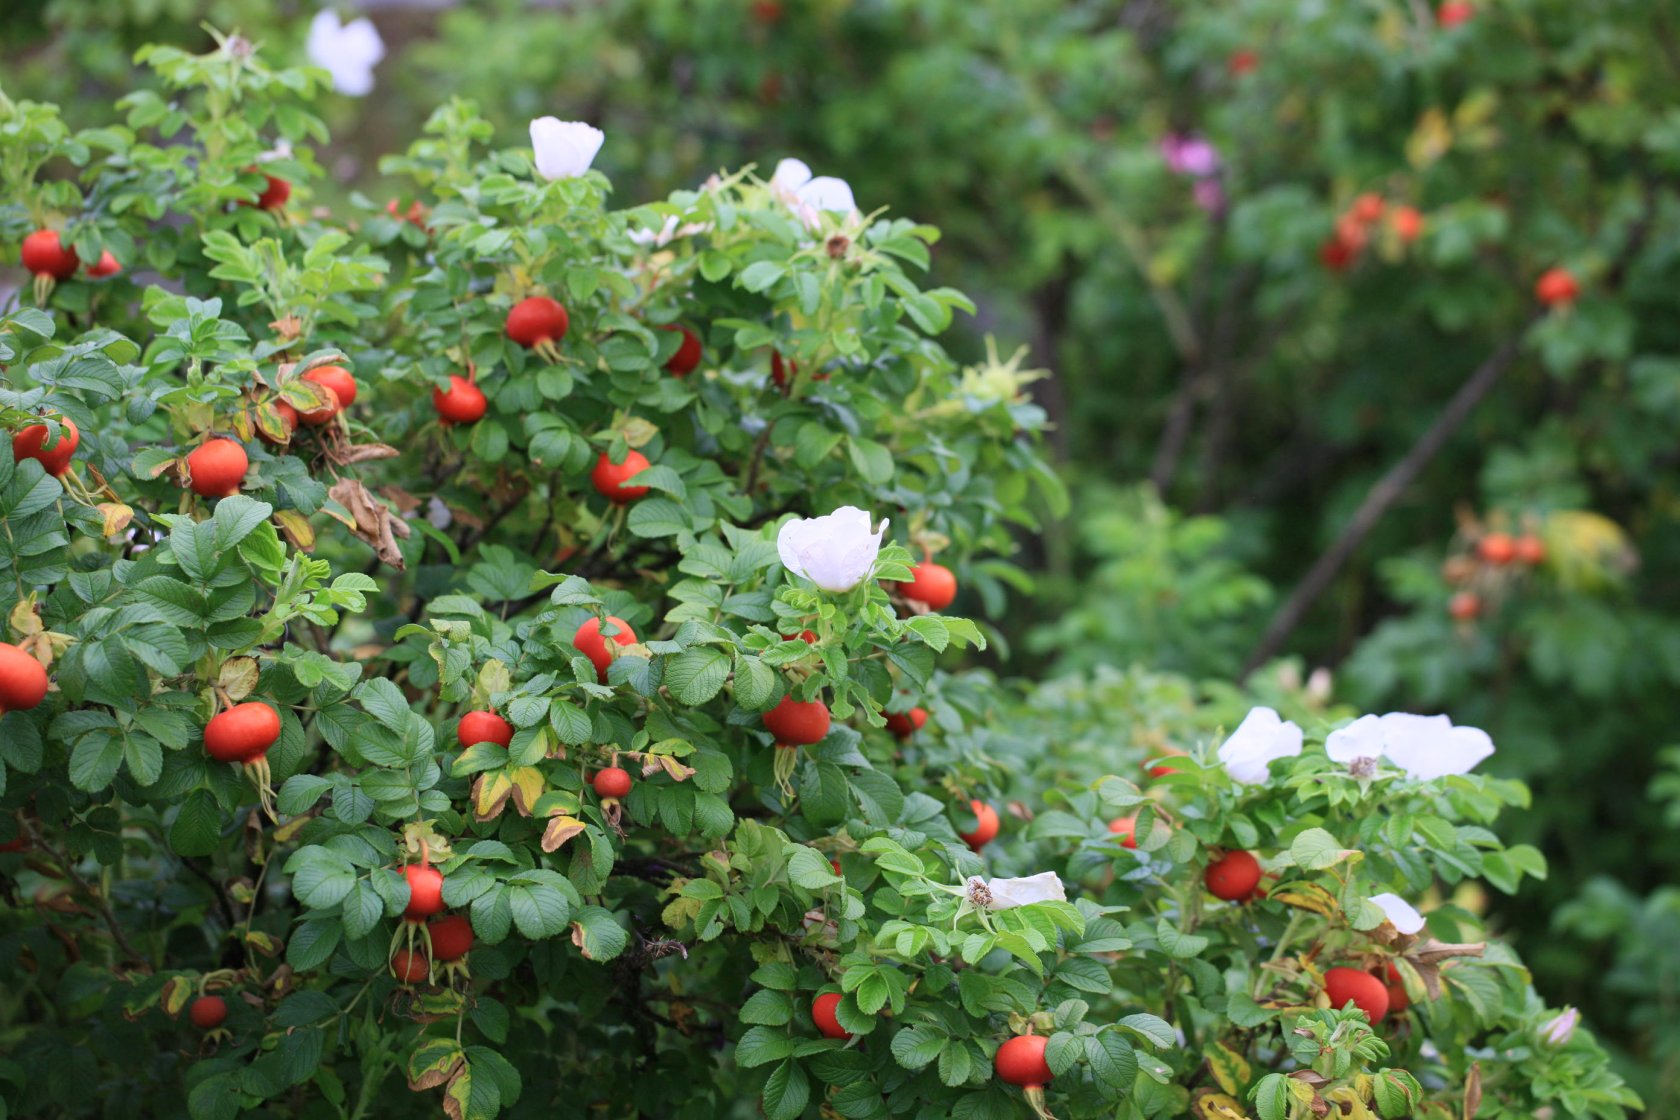  Сорт Овал цветёт почти 2 месяца, за это время успевают вырасти первые плоды